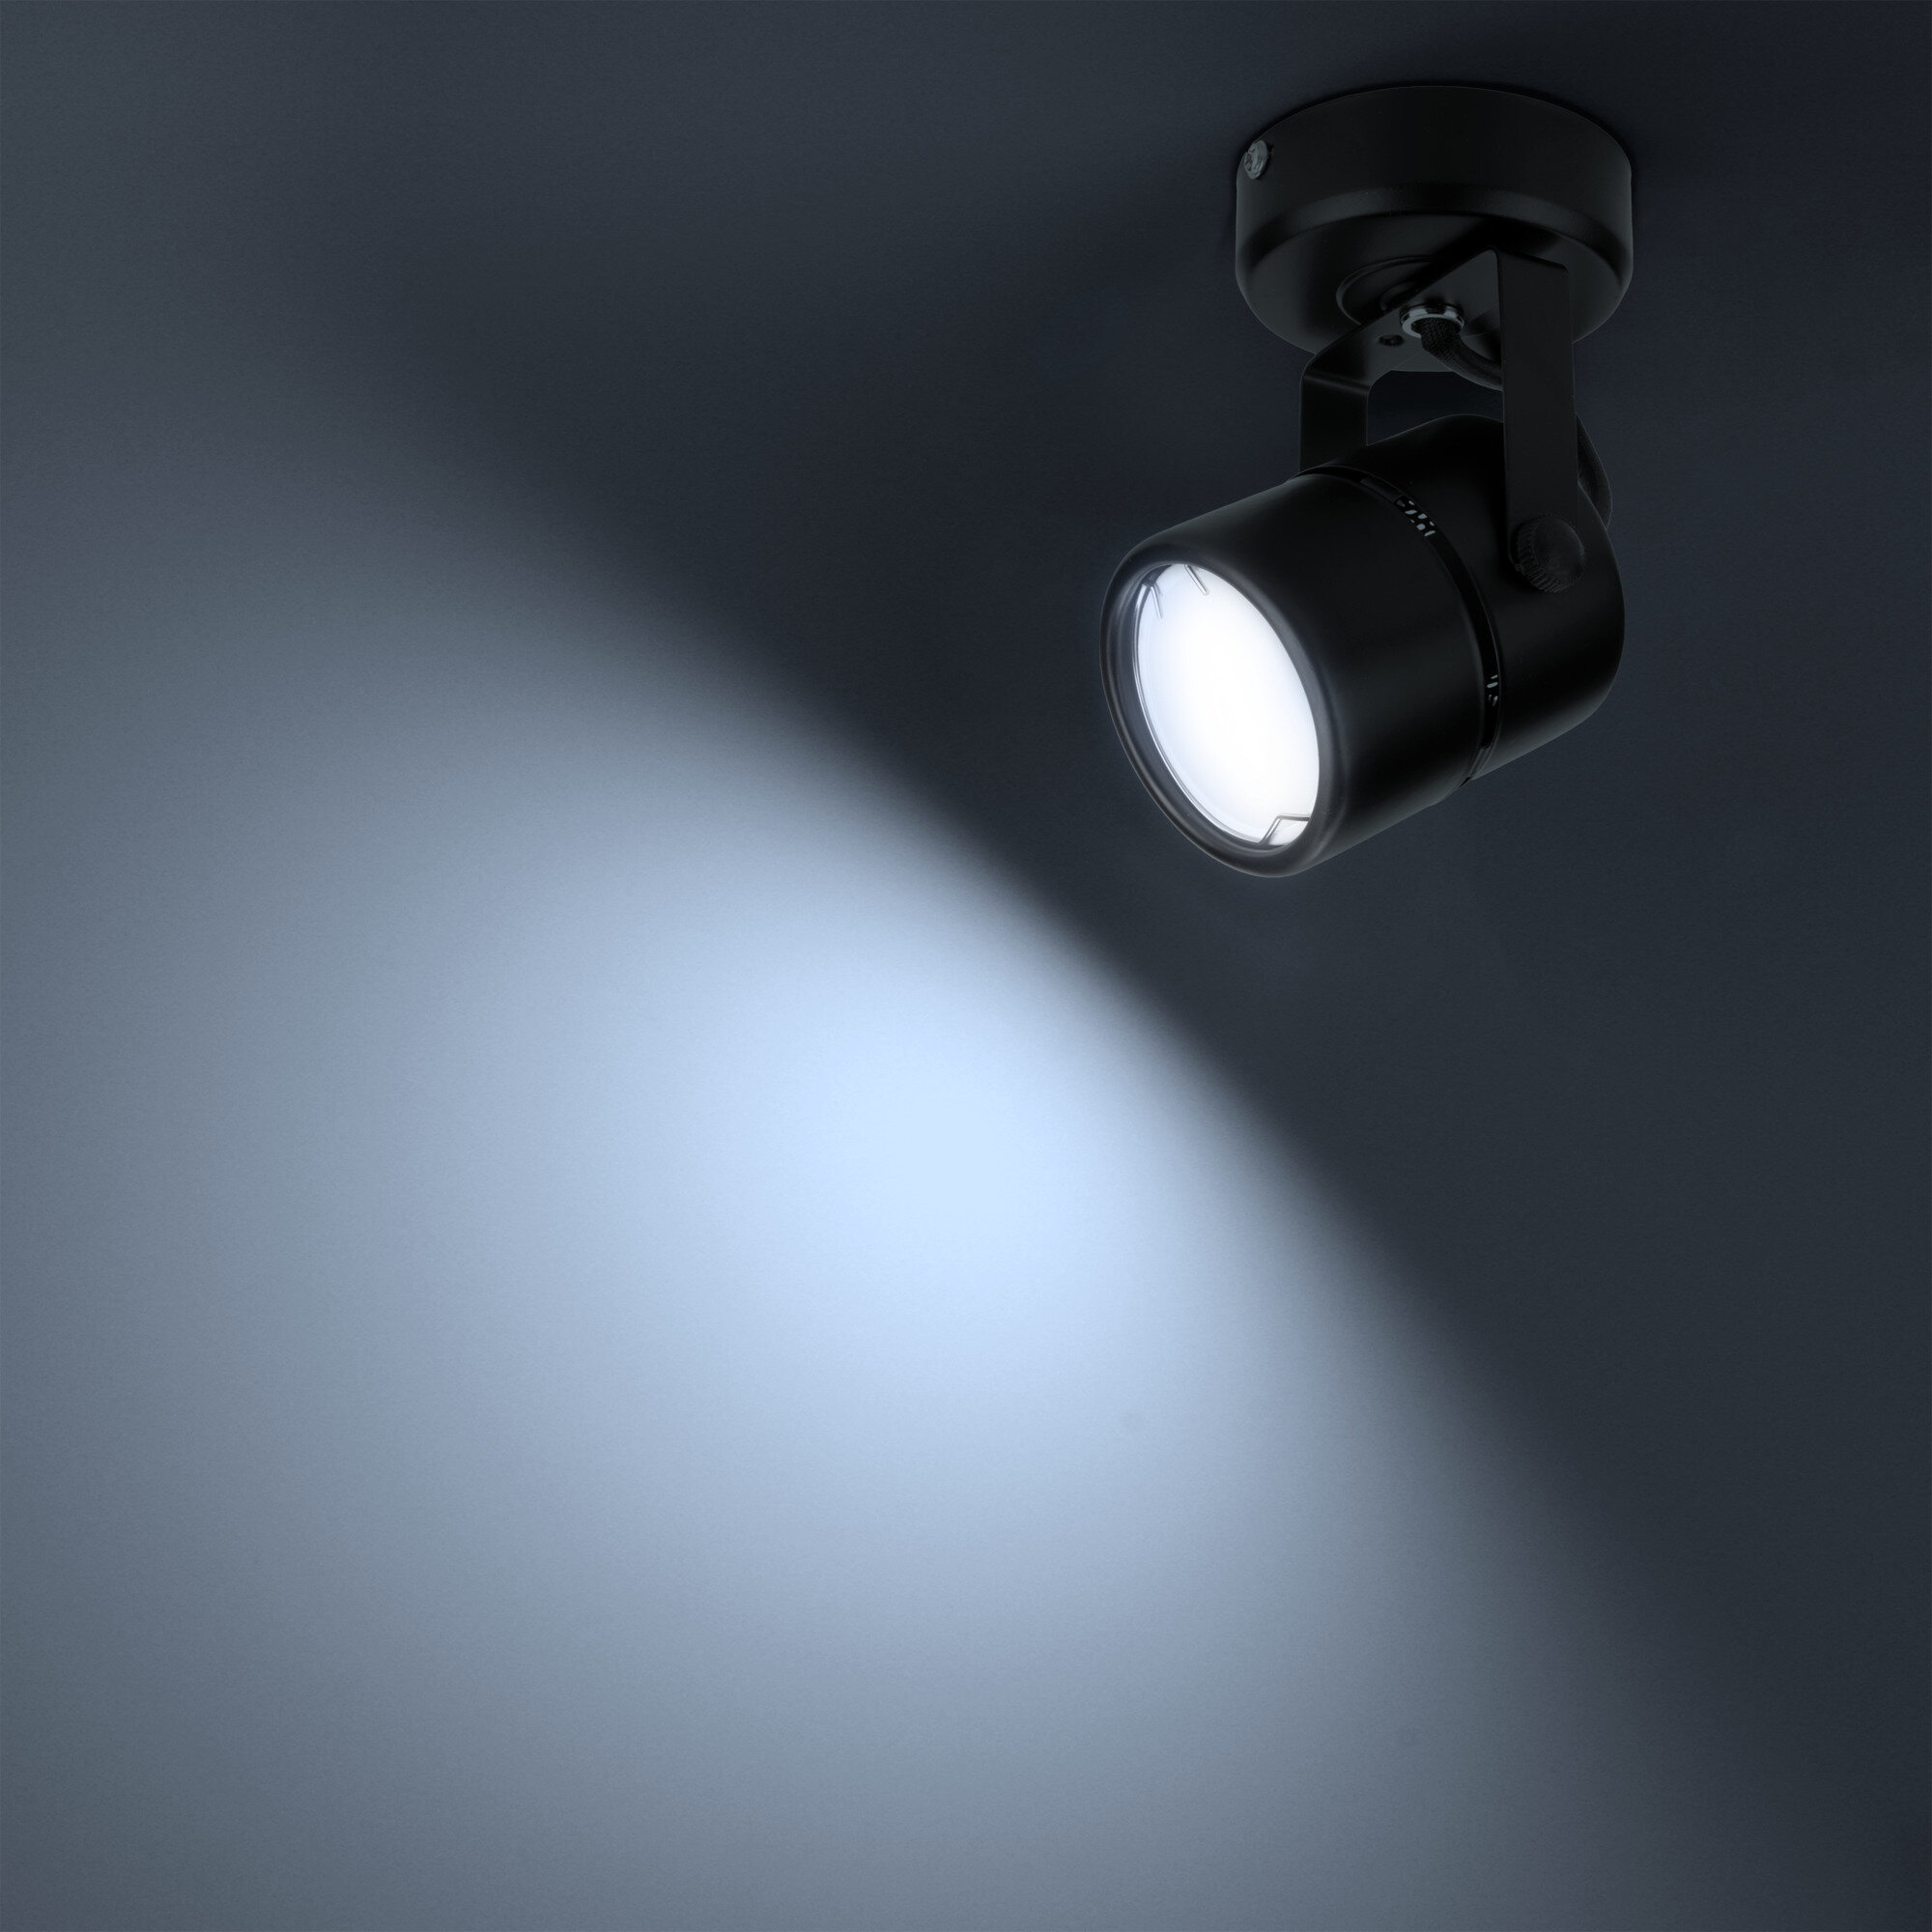 Светильник накладной Arton, поворотный, цилиндр, 60х90х140мм, GU10, металл, черный, настенно-потолочный светильник для гостиной, кухни, Ritter 59963 0